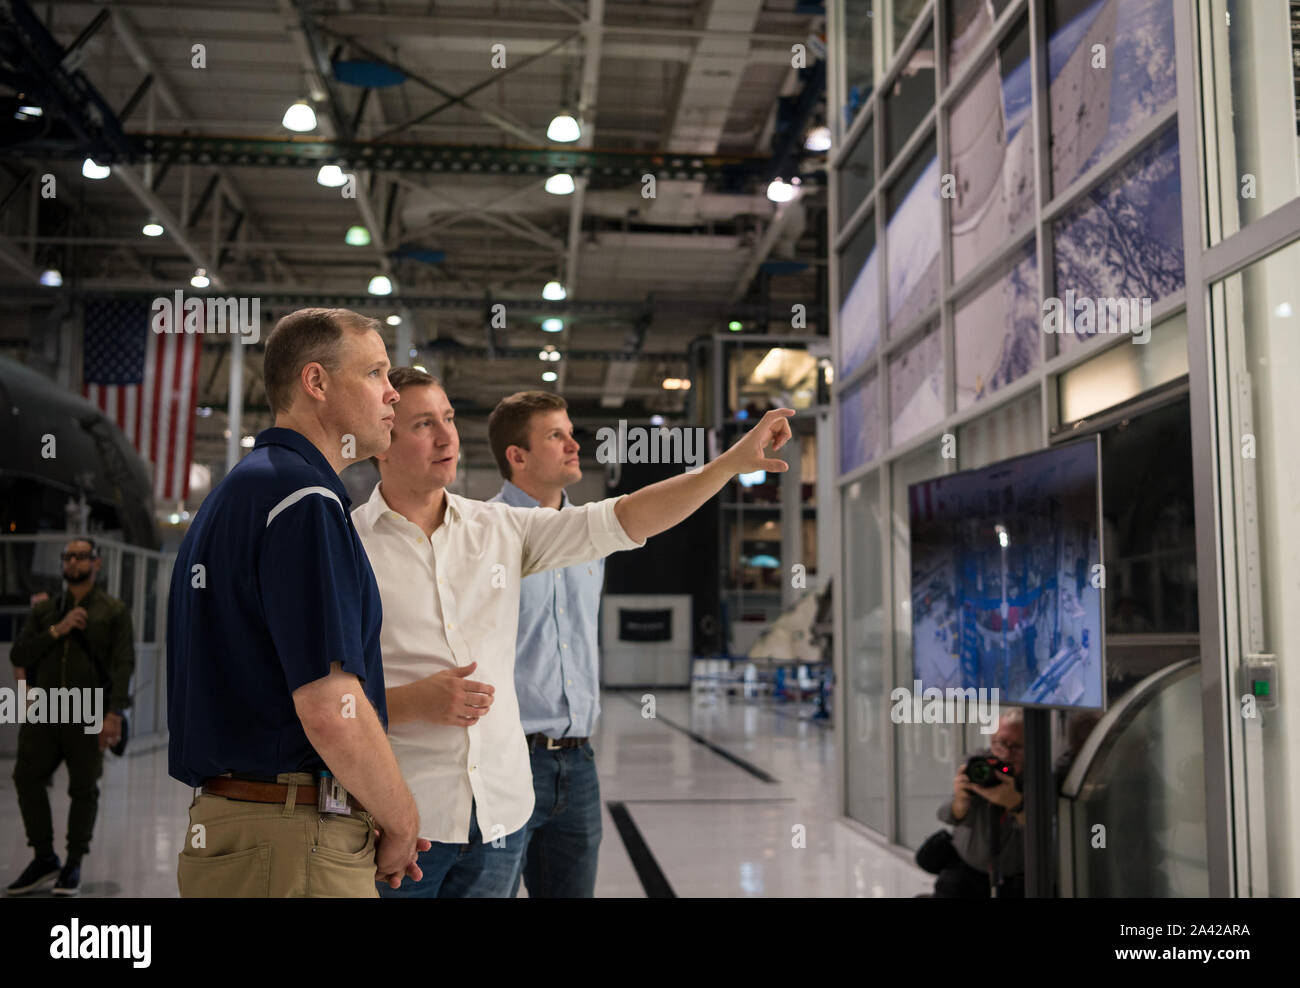 Hawthorne, Estados Unidos. 11 Oct, 2019. El administrador de la NASA Jim Bridenstine, izquierda, habla con Joseph Petrzelka de SpaceX acerca de la tripulación Dragon cápsula que lanzará durante la demostración-2 misión, mientras que en una gira de la SpaceX Sede el 10 de octubre de 2019, en Hawthorne, CA. Foto de la NASA por Aubrey Gemignani/UPI Crédito: UPI/Alamy Live News Foto de stock